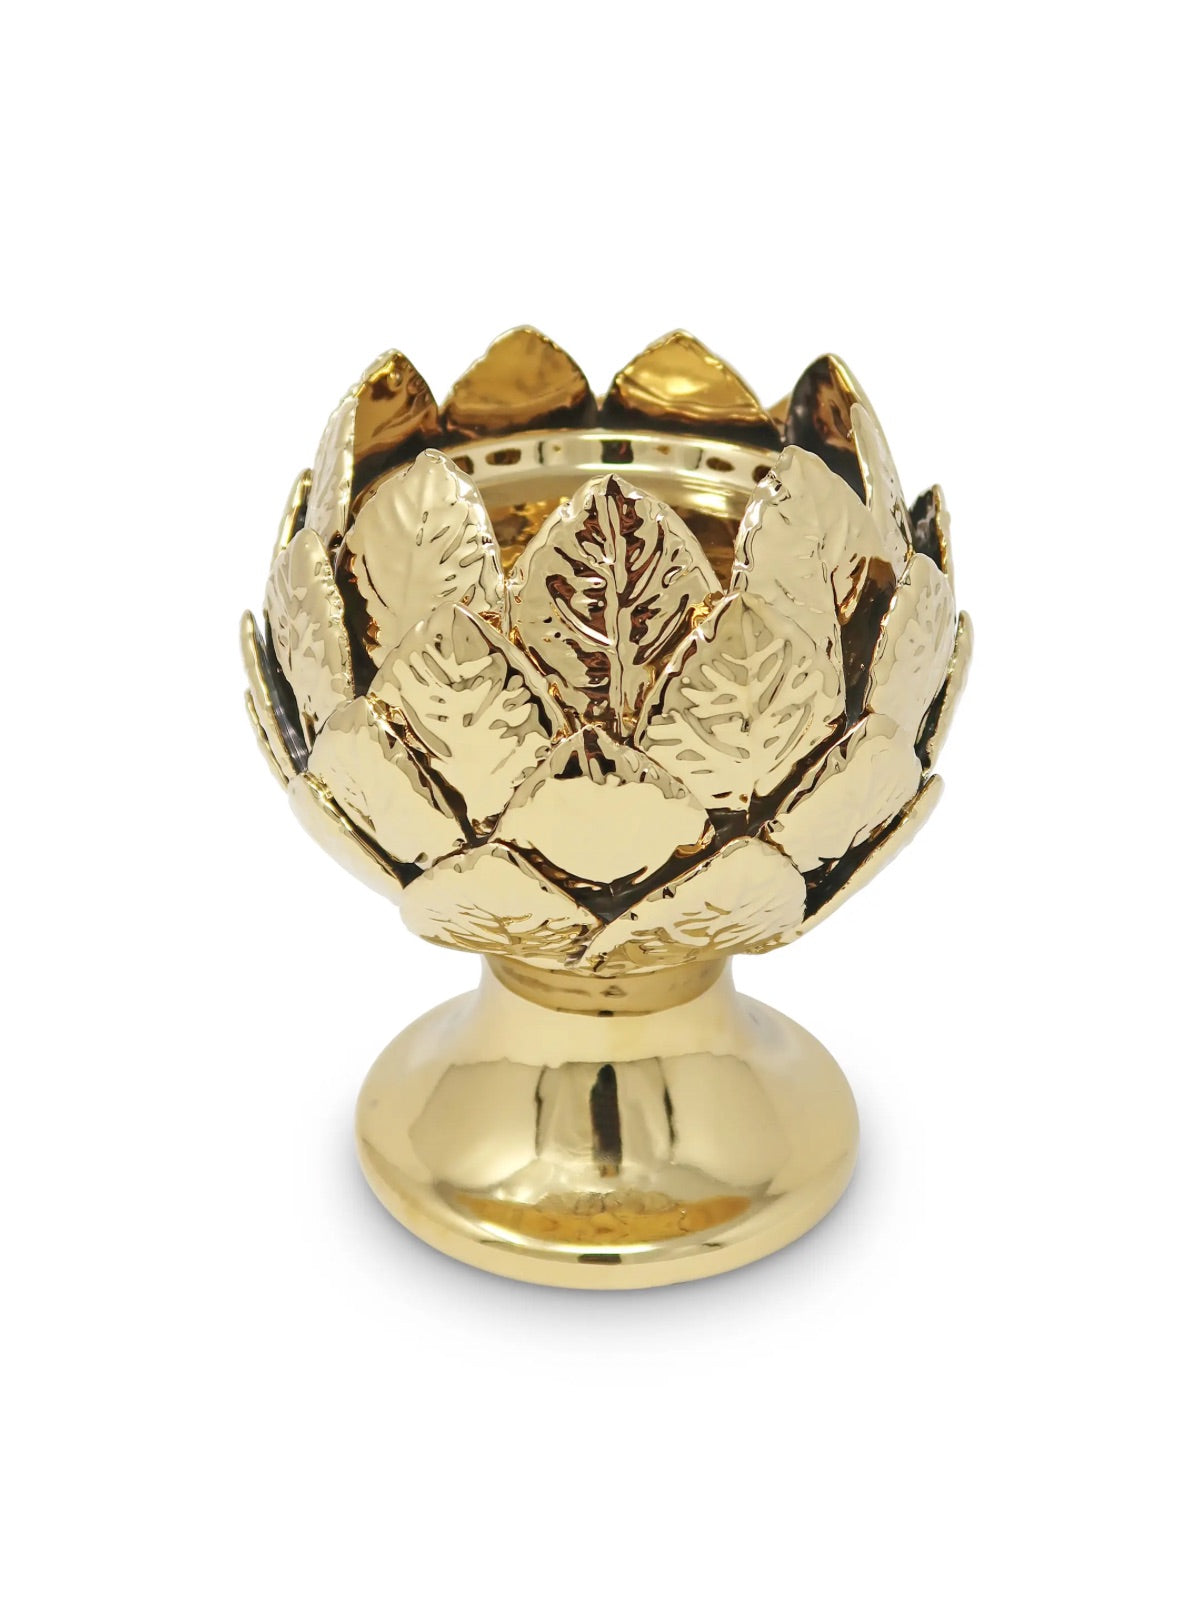 Ceramic Tealight Holder with Gold Leaf Design.